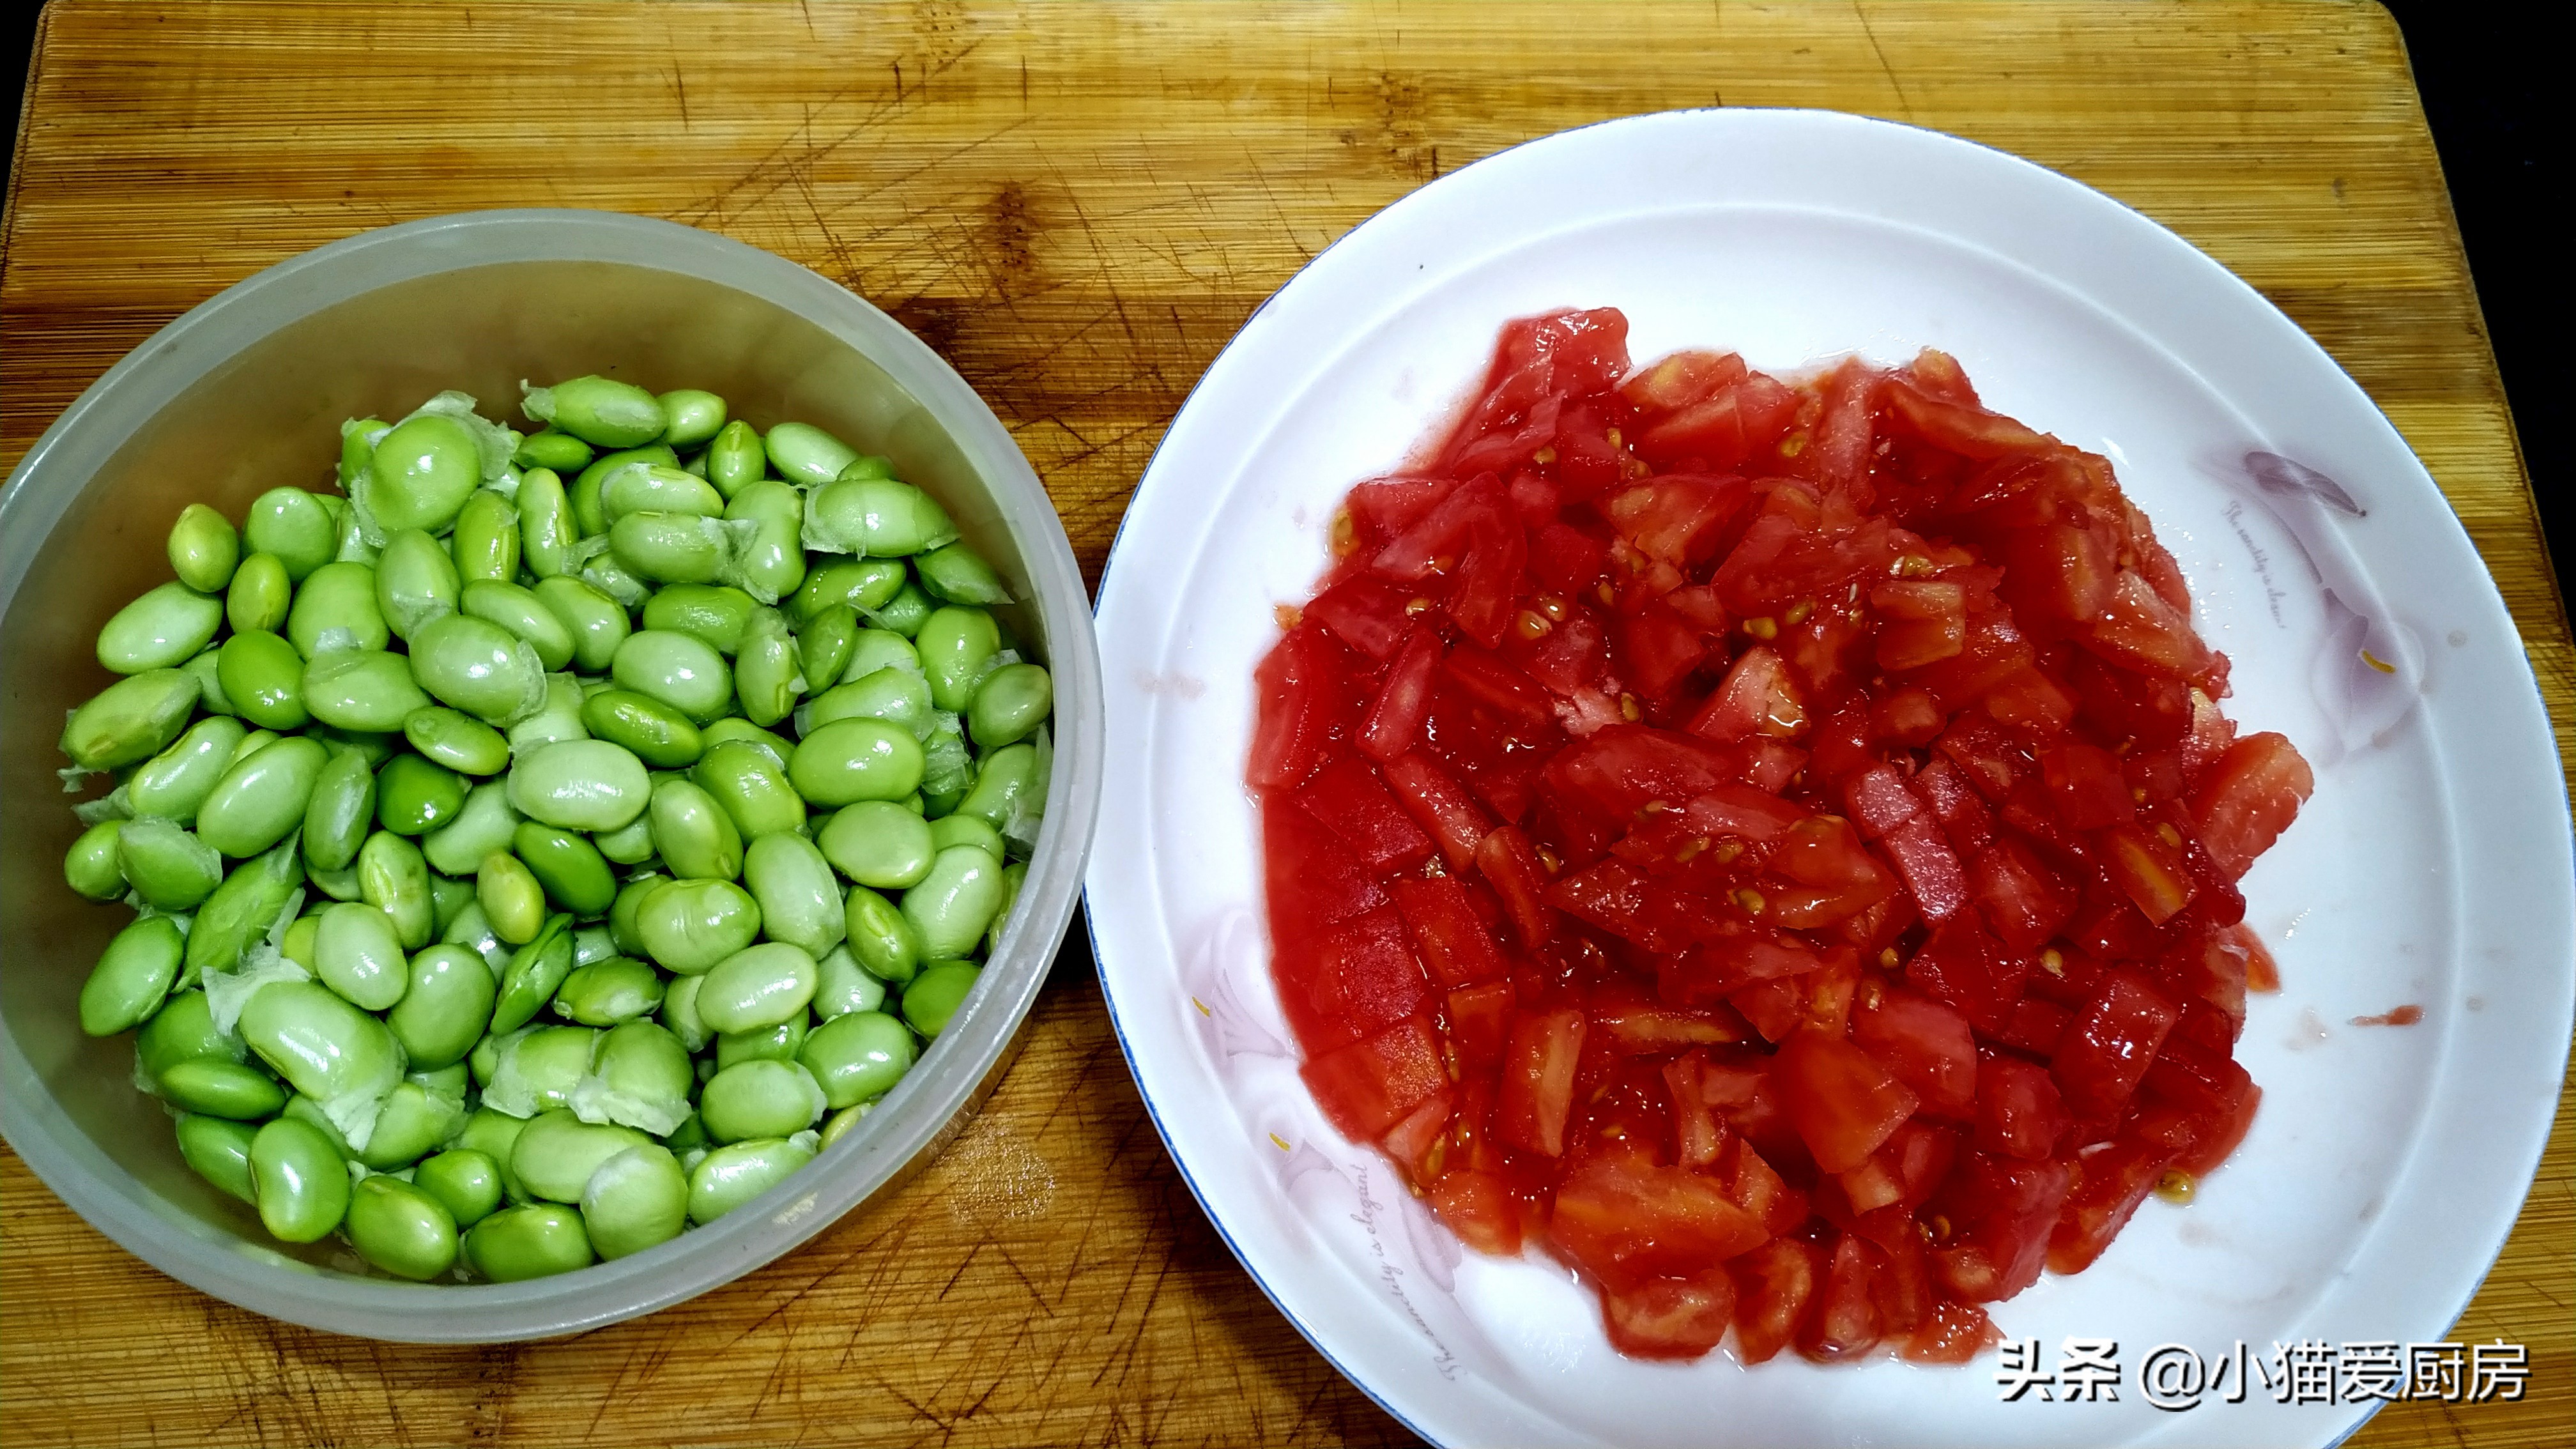 西红柿炒毛豆 做法简单 小小一盘完全不够吃 实在是太美味了